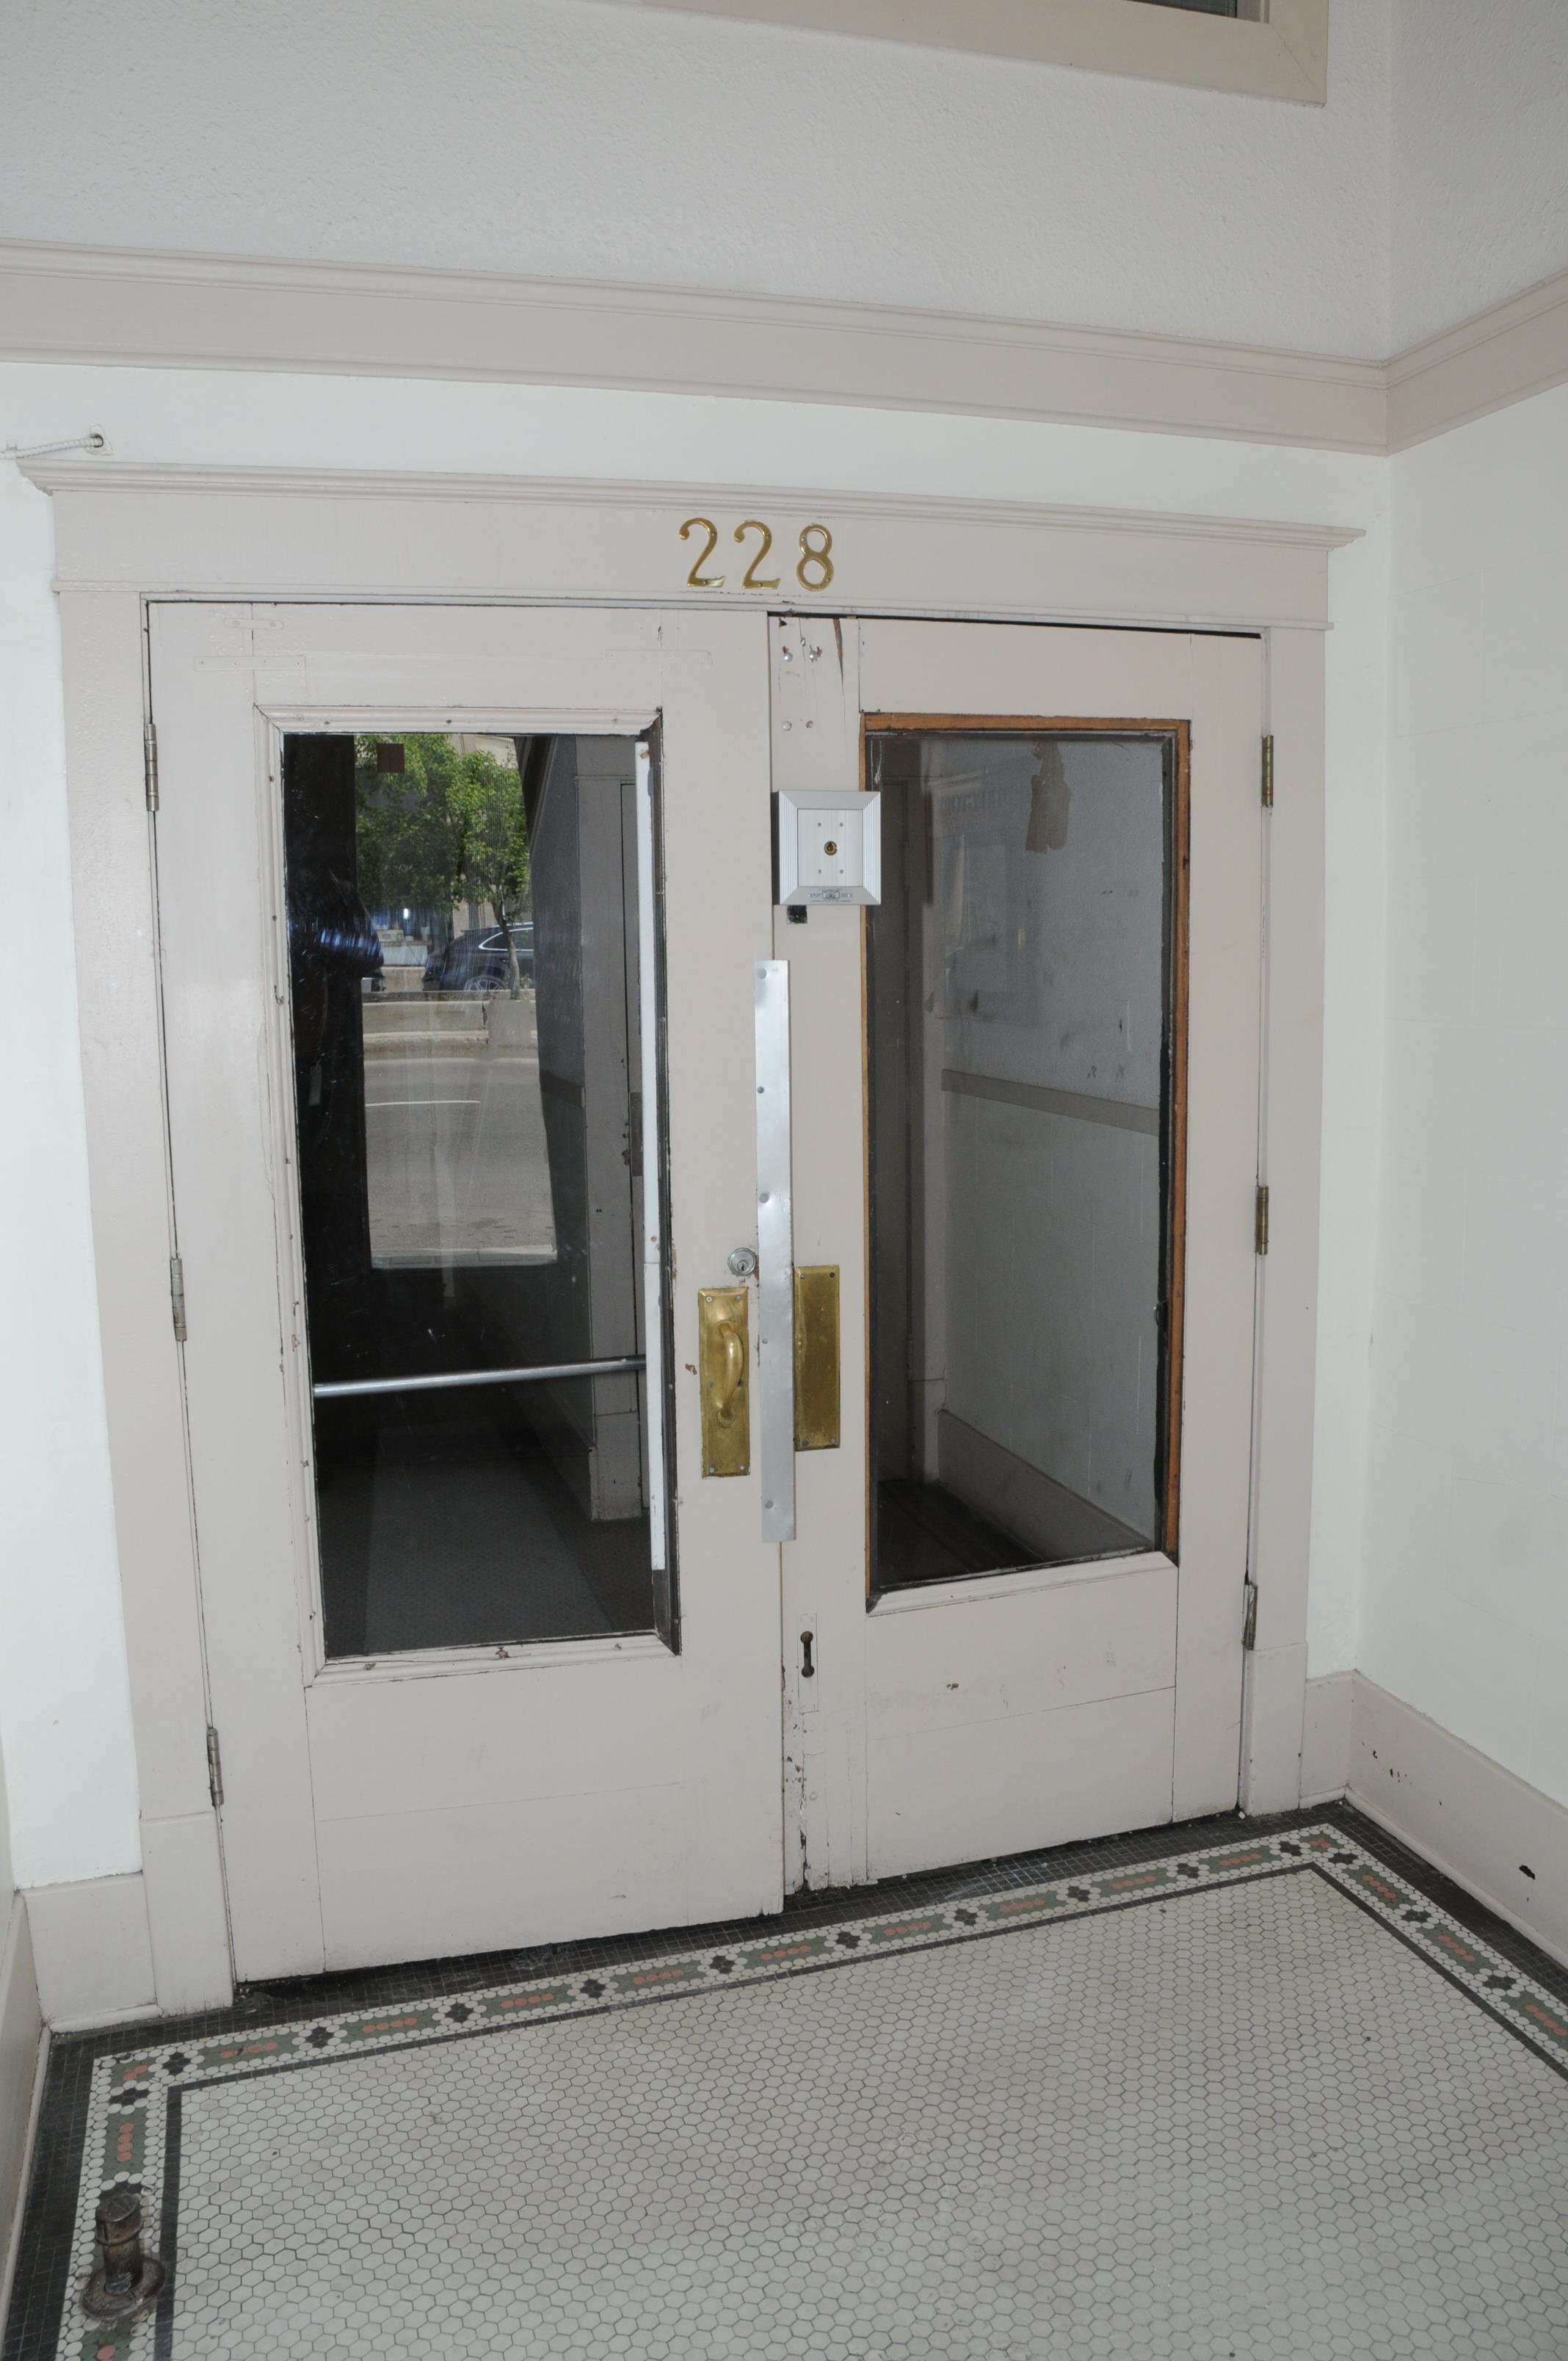 Image of the Traveler's Block lobby door.